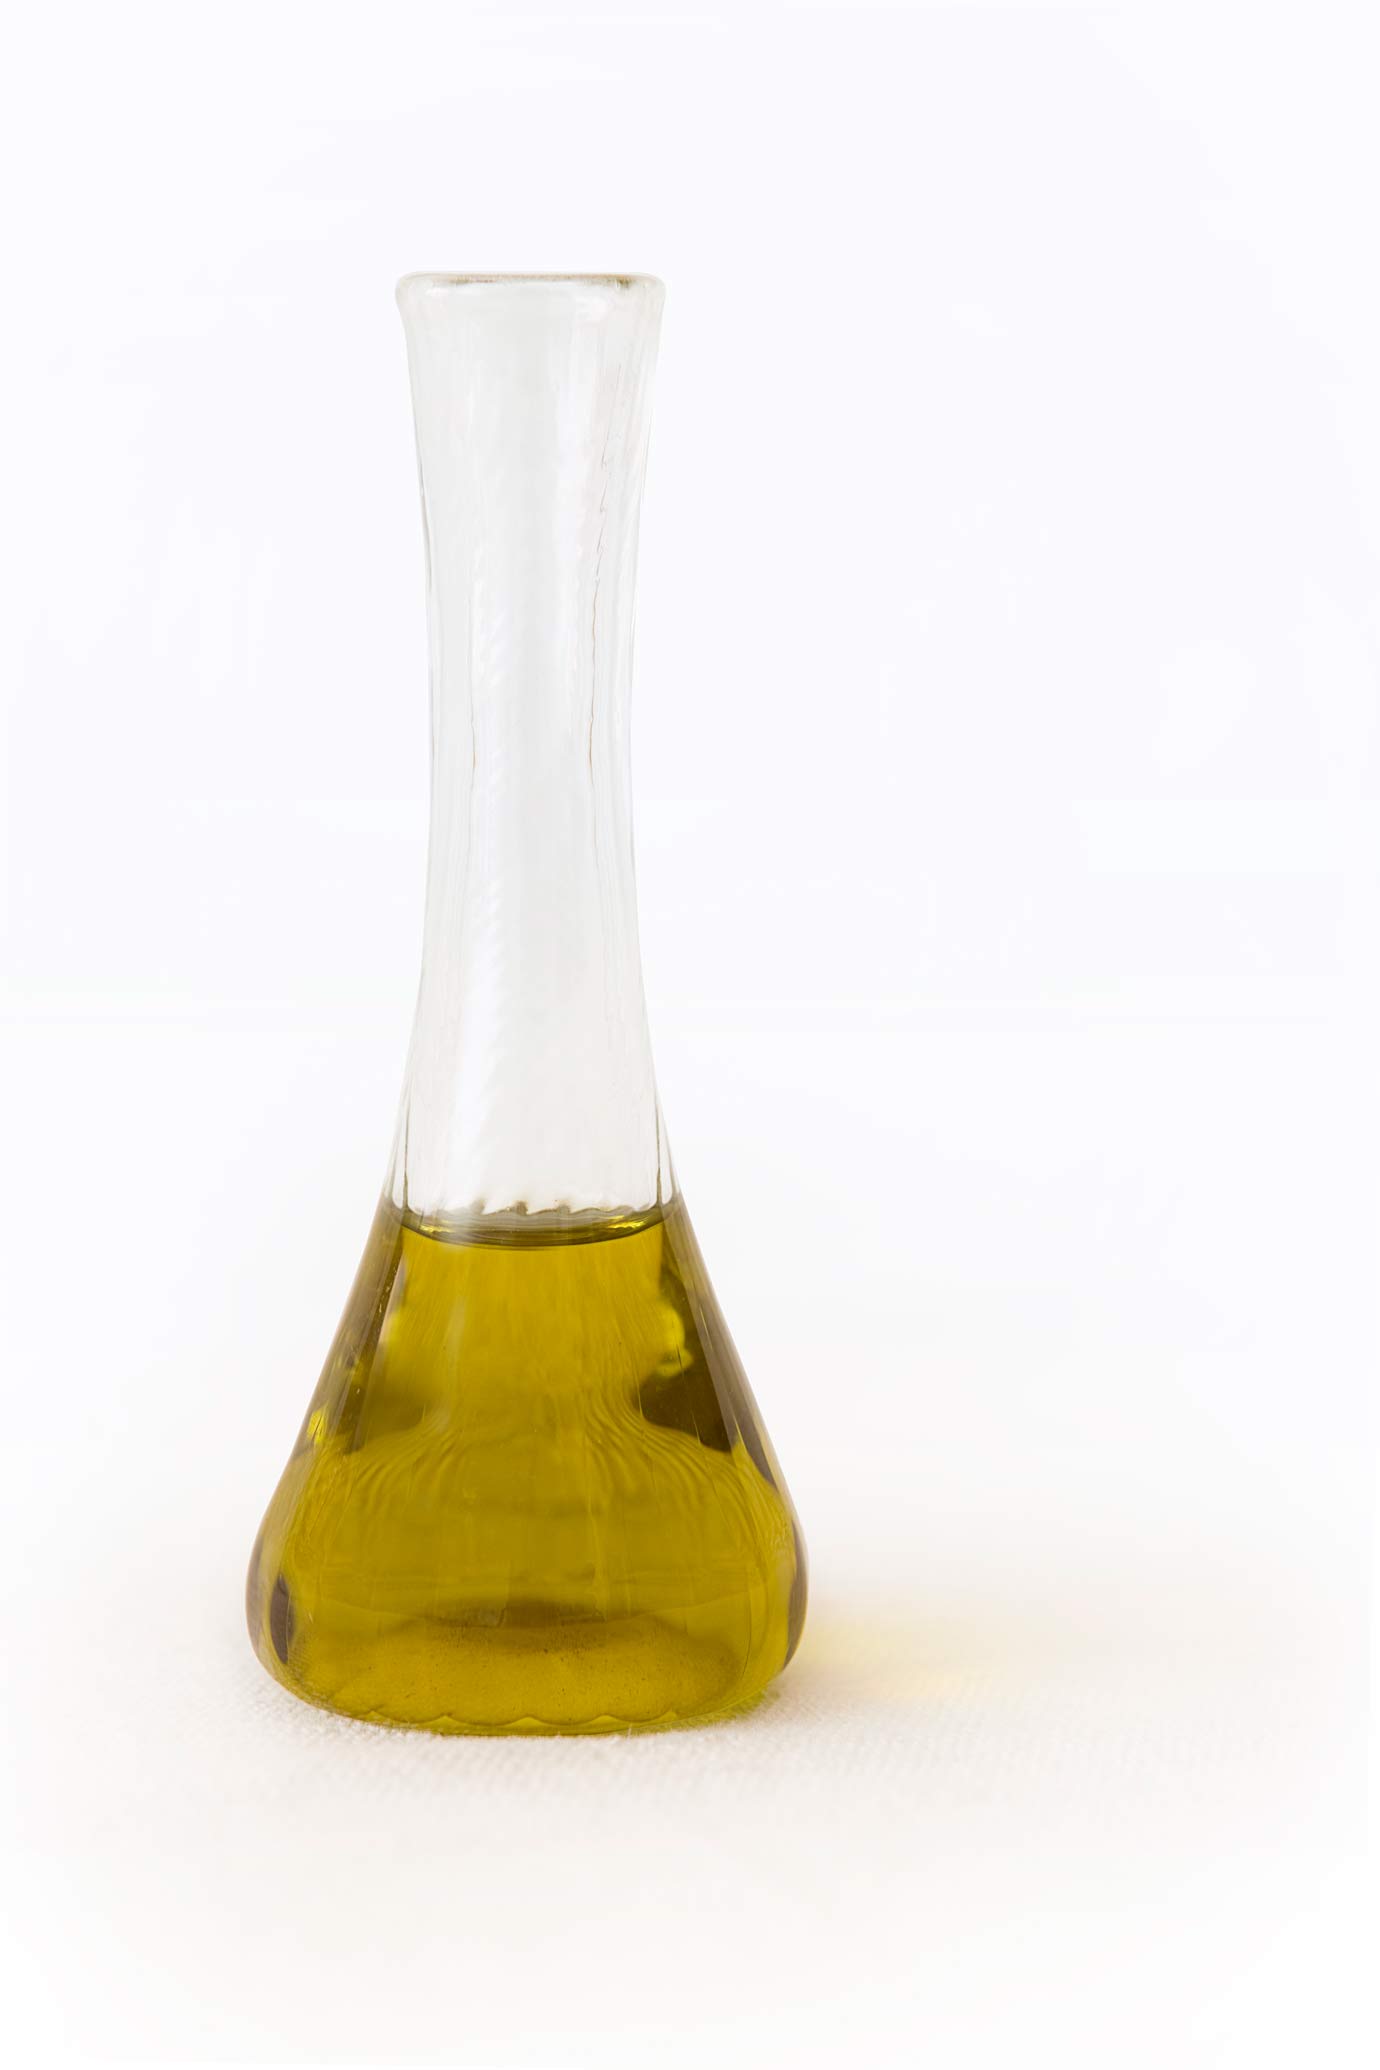 les bienfaits de l'huile de chanvre biologique pure, une base idéale pour les cosmétiques.